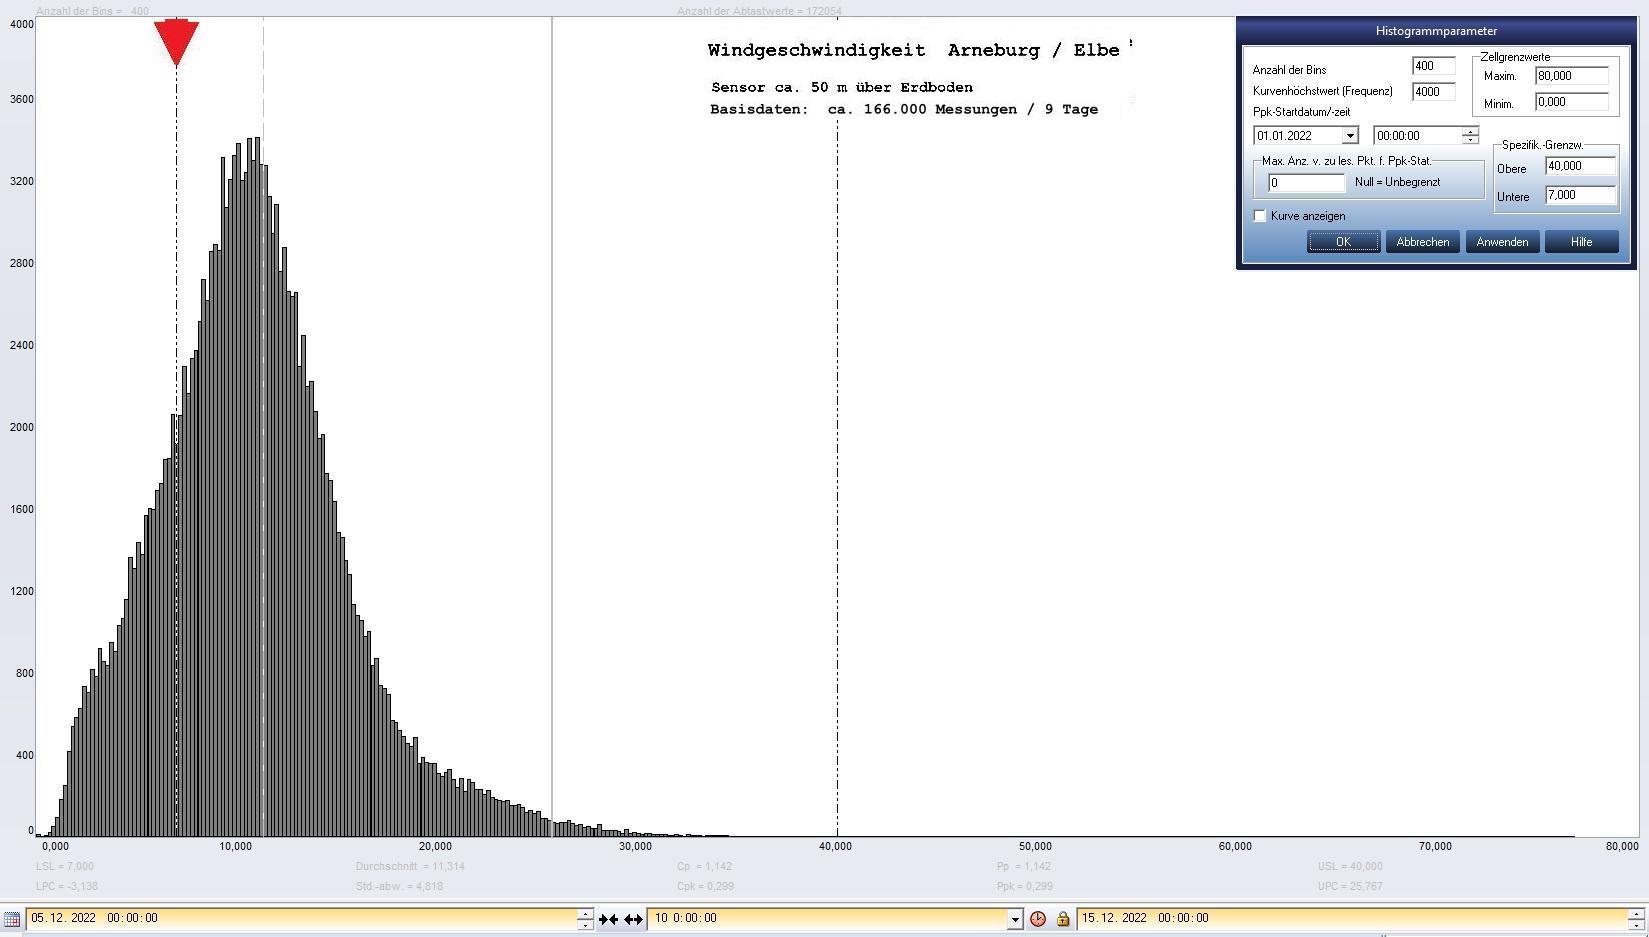 Arneburg 9 Tage Histogramm Winddaten, ab 05.12.2022 
  Sensor auf Gebude, ca. 50 m ber Erdboden, Basis: 5s-Aufzeichnung